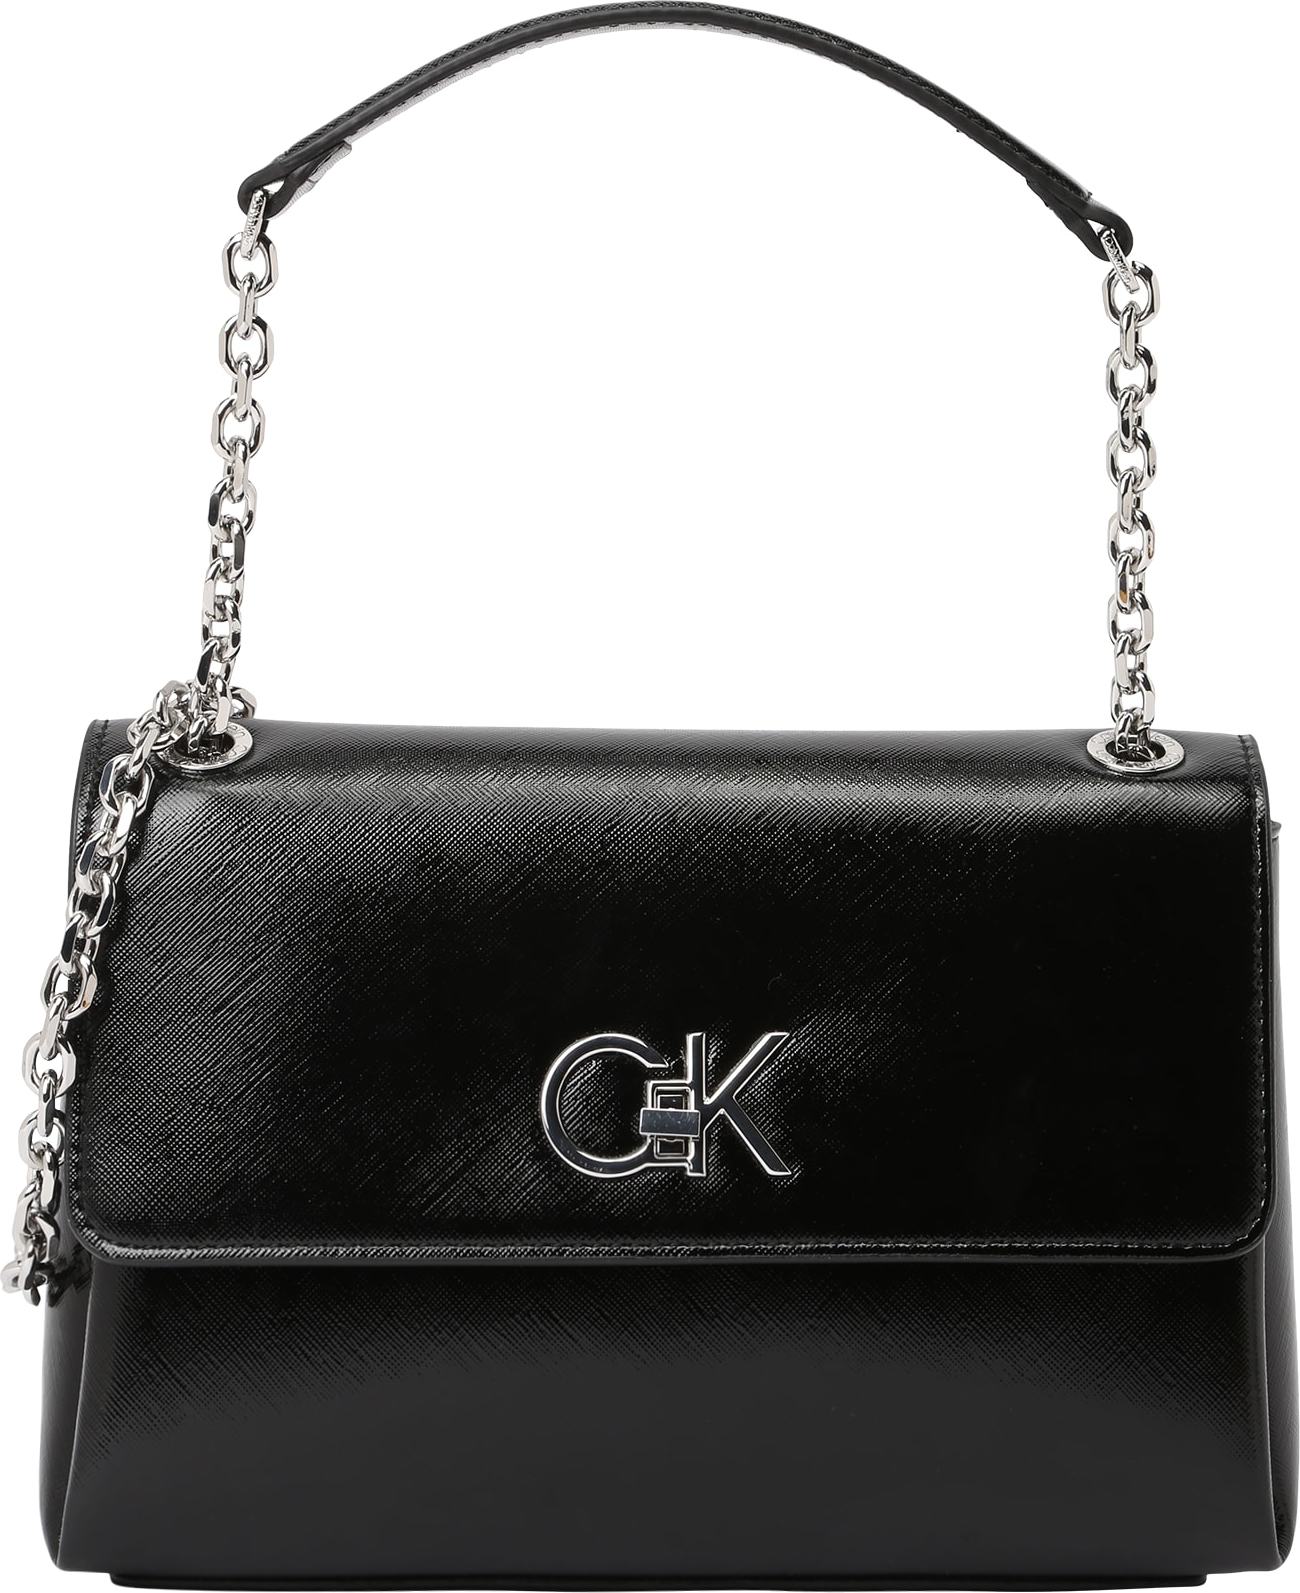 Calvin Klein Taška přes rameno černá / stříbrná